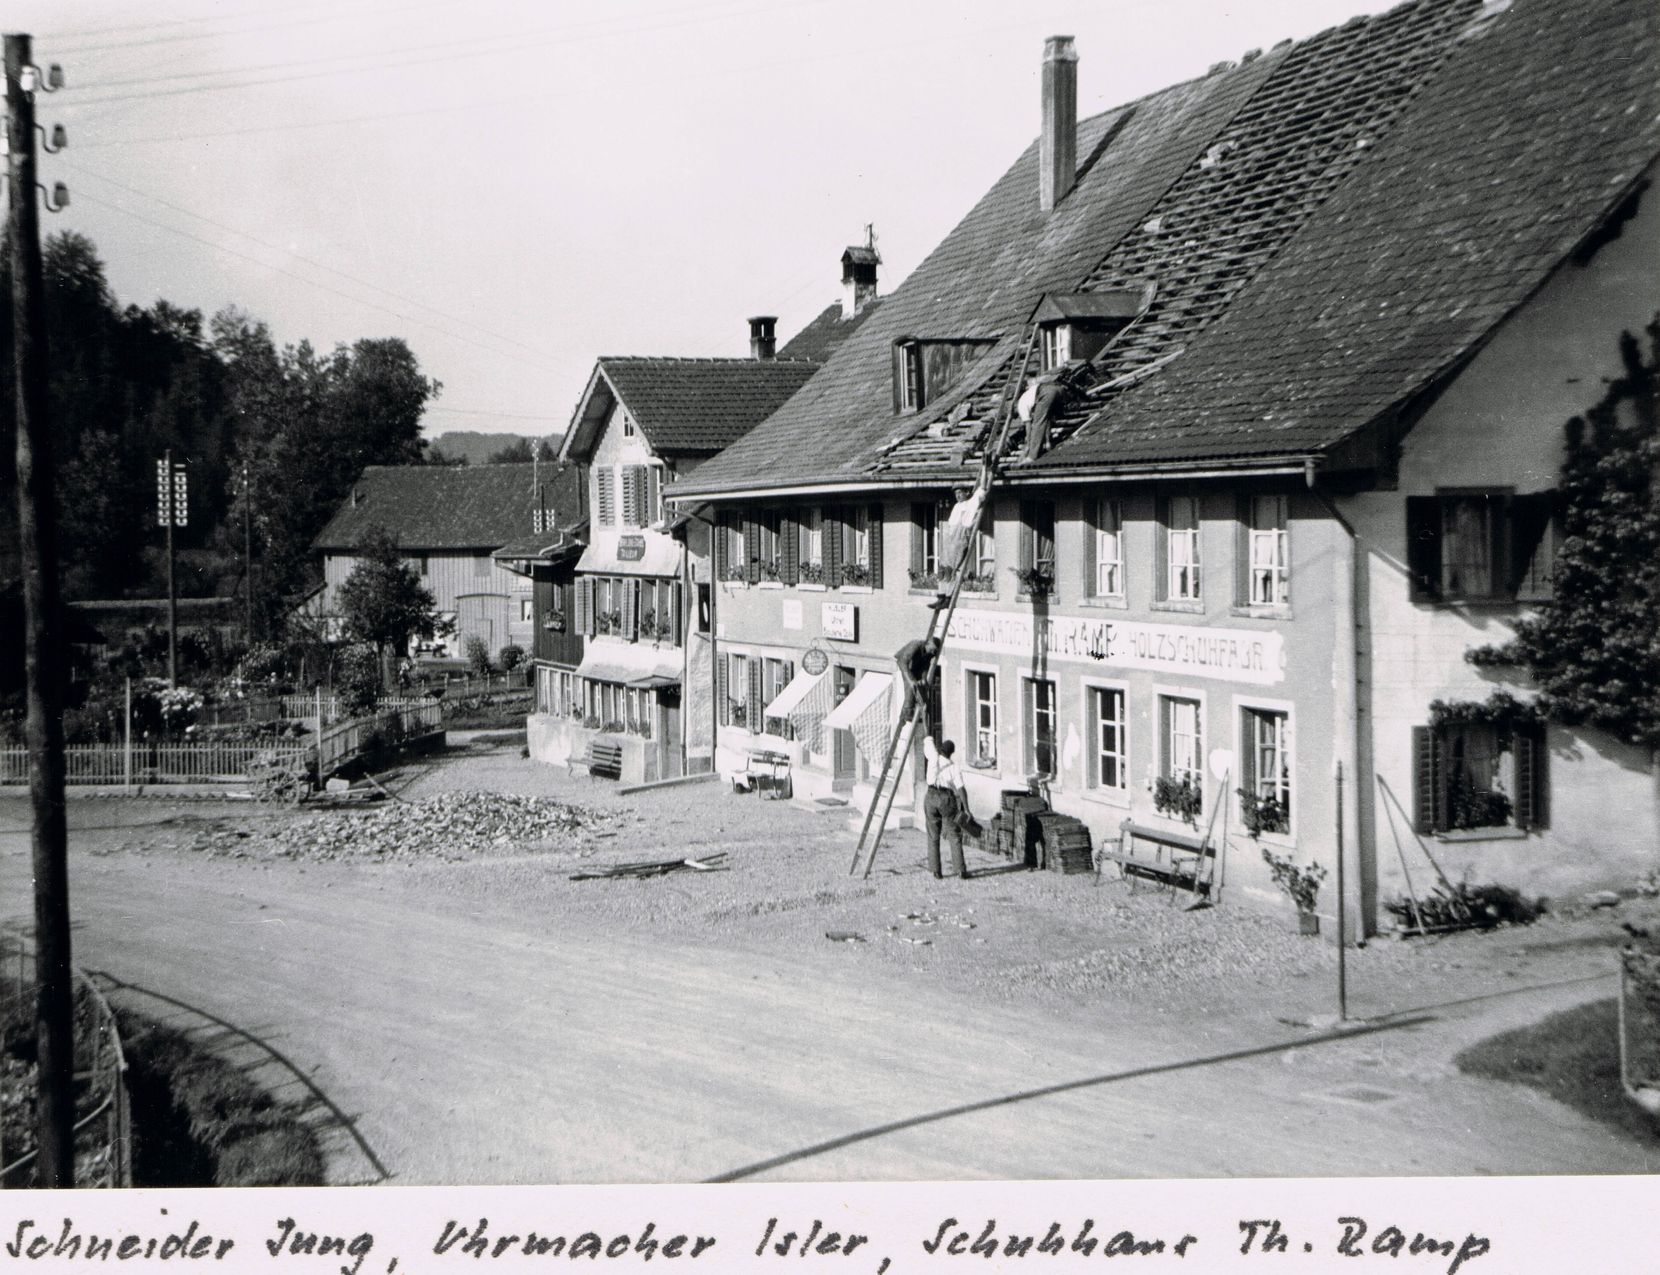 Dachdeckerarbeiten in den 1940er Jahre